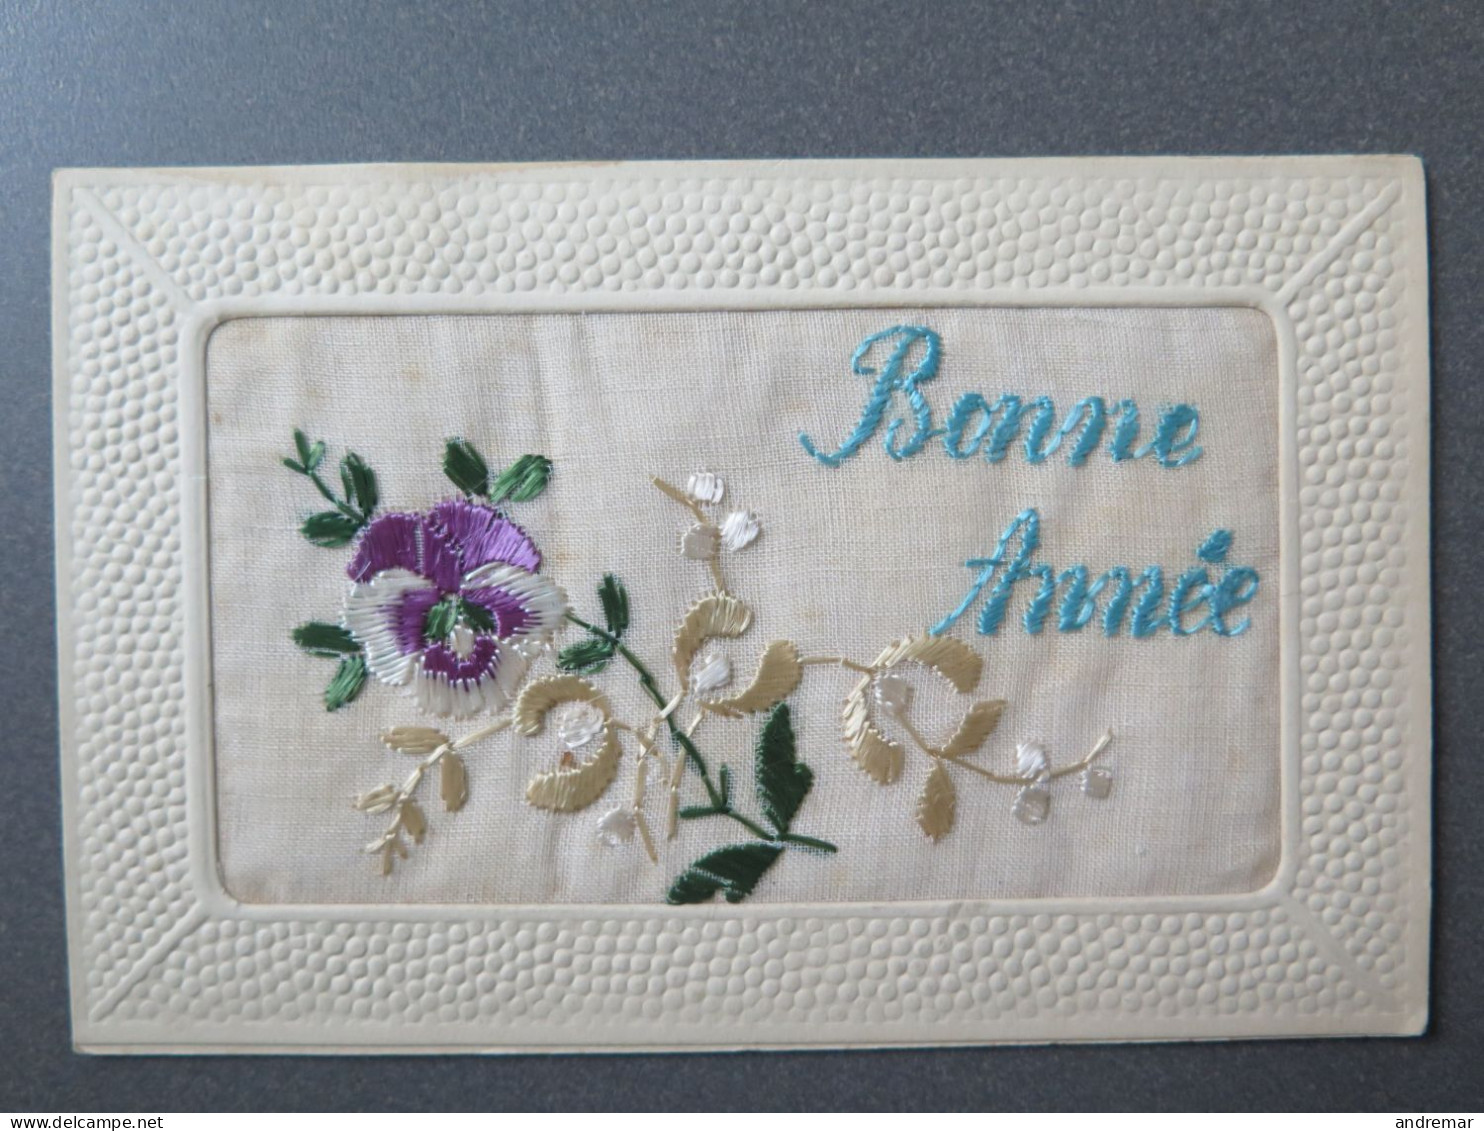 BONNE ANNÉE - GLÜCKLICHES NEUJAHR - HAPPY NEW YEAR - Embroidered